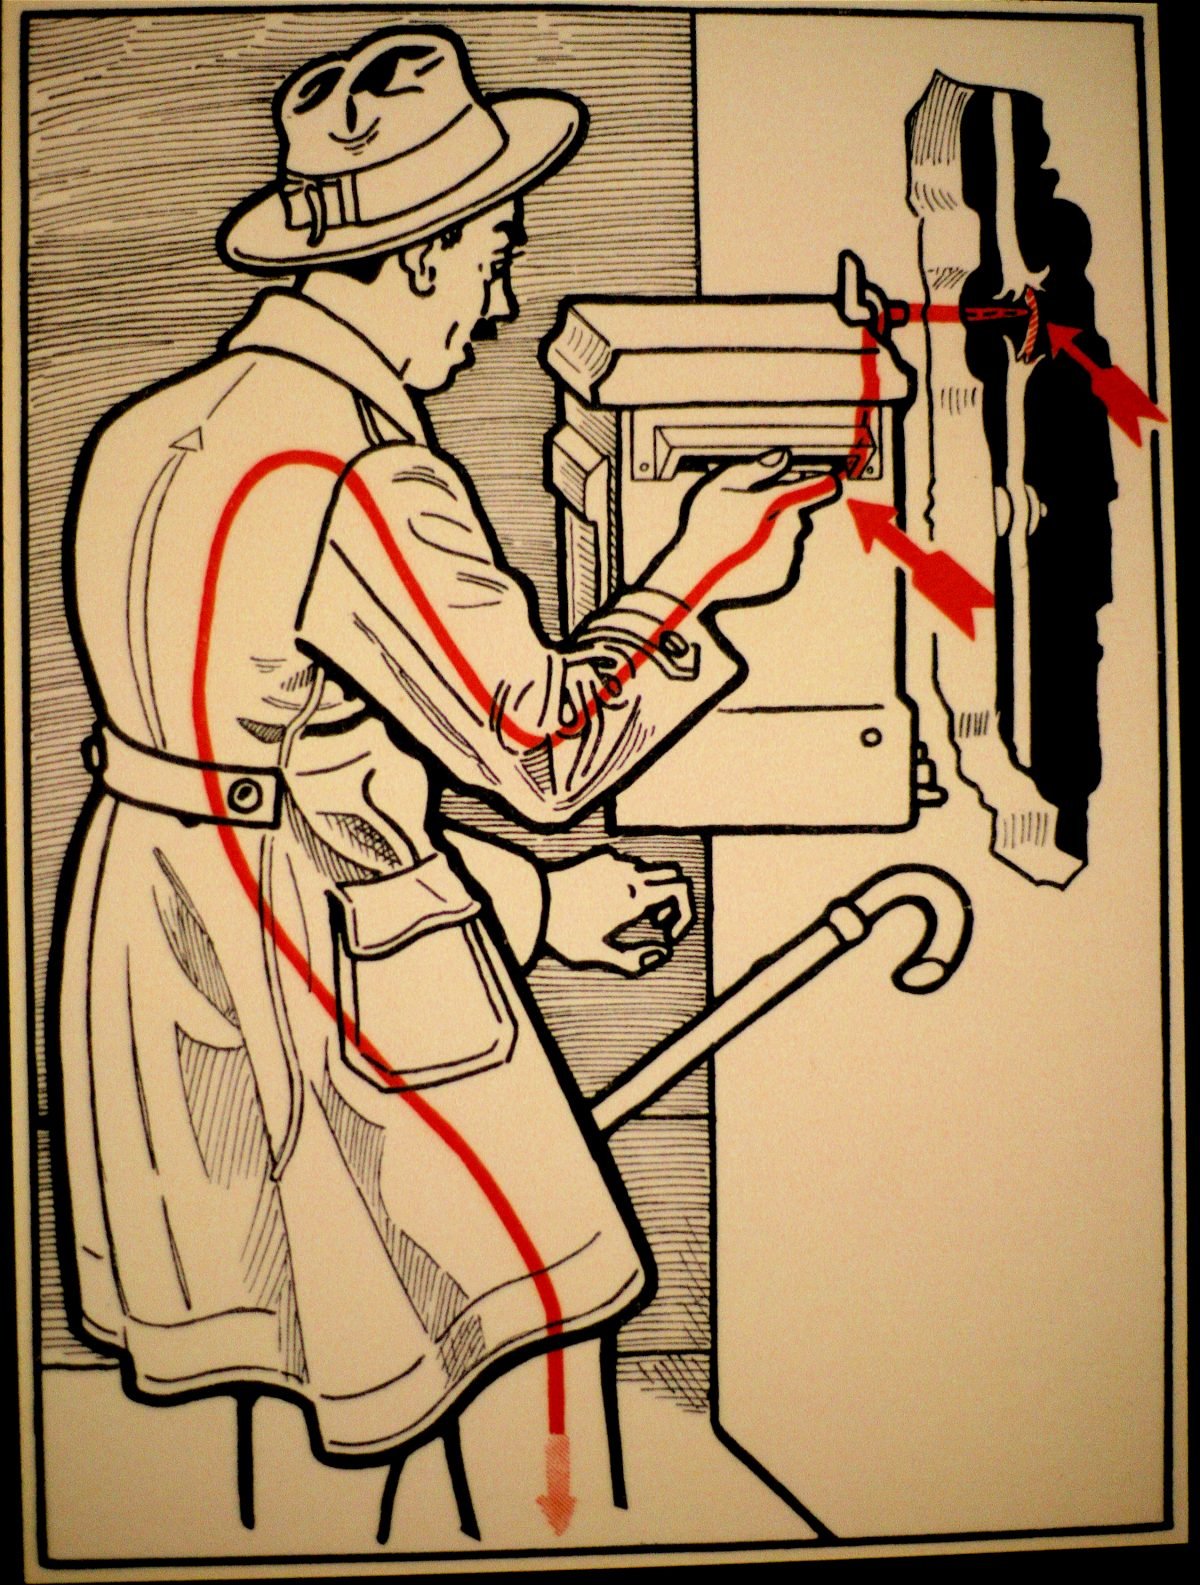 Elektroschutz-in-132-Bildern’-Electrical-Protection-in-132-Pictures-by-Viennese-physician-Stefan-Jellinek-1878-1968-8-1200x1585.jpg